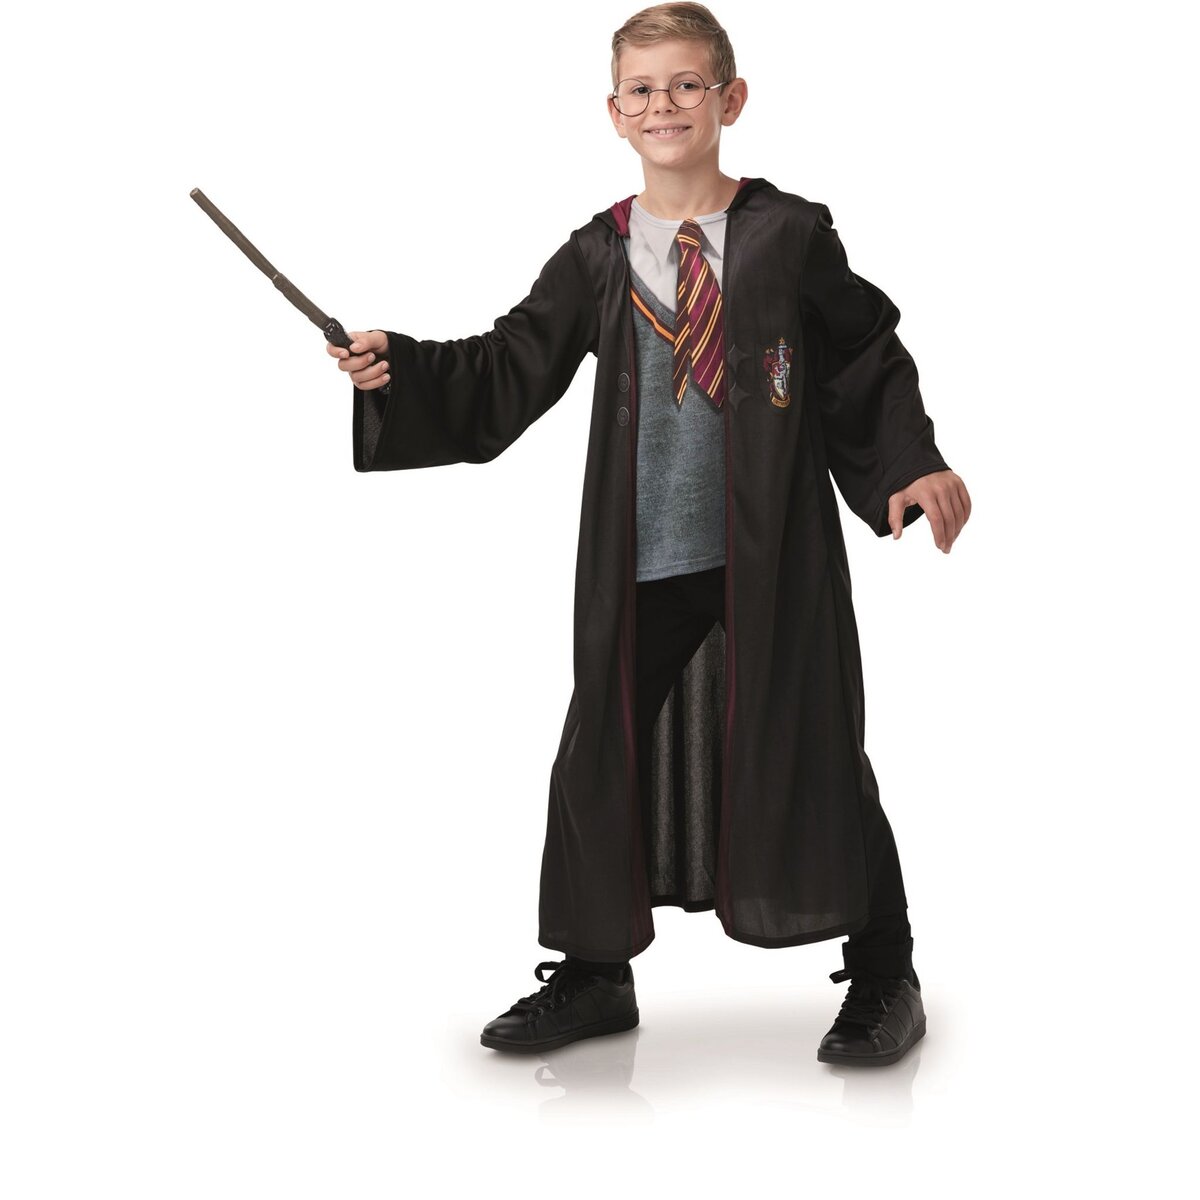 RUBIES Déguisement Harry Potter + accessoires taille 5/6 ans pas